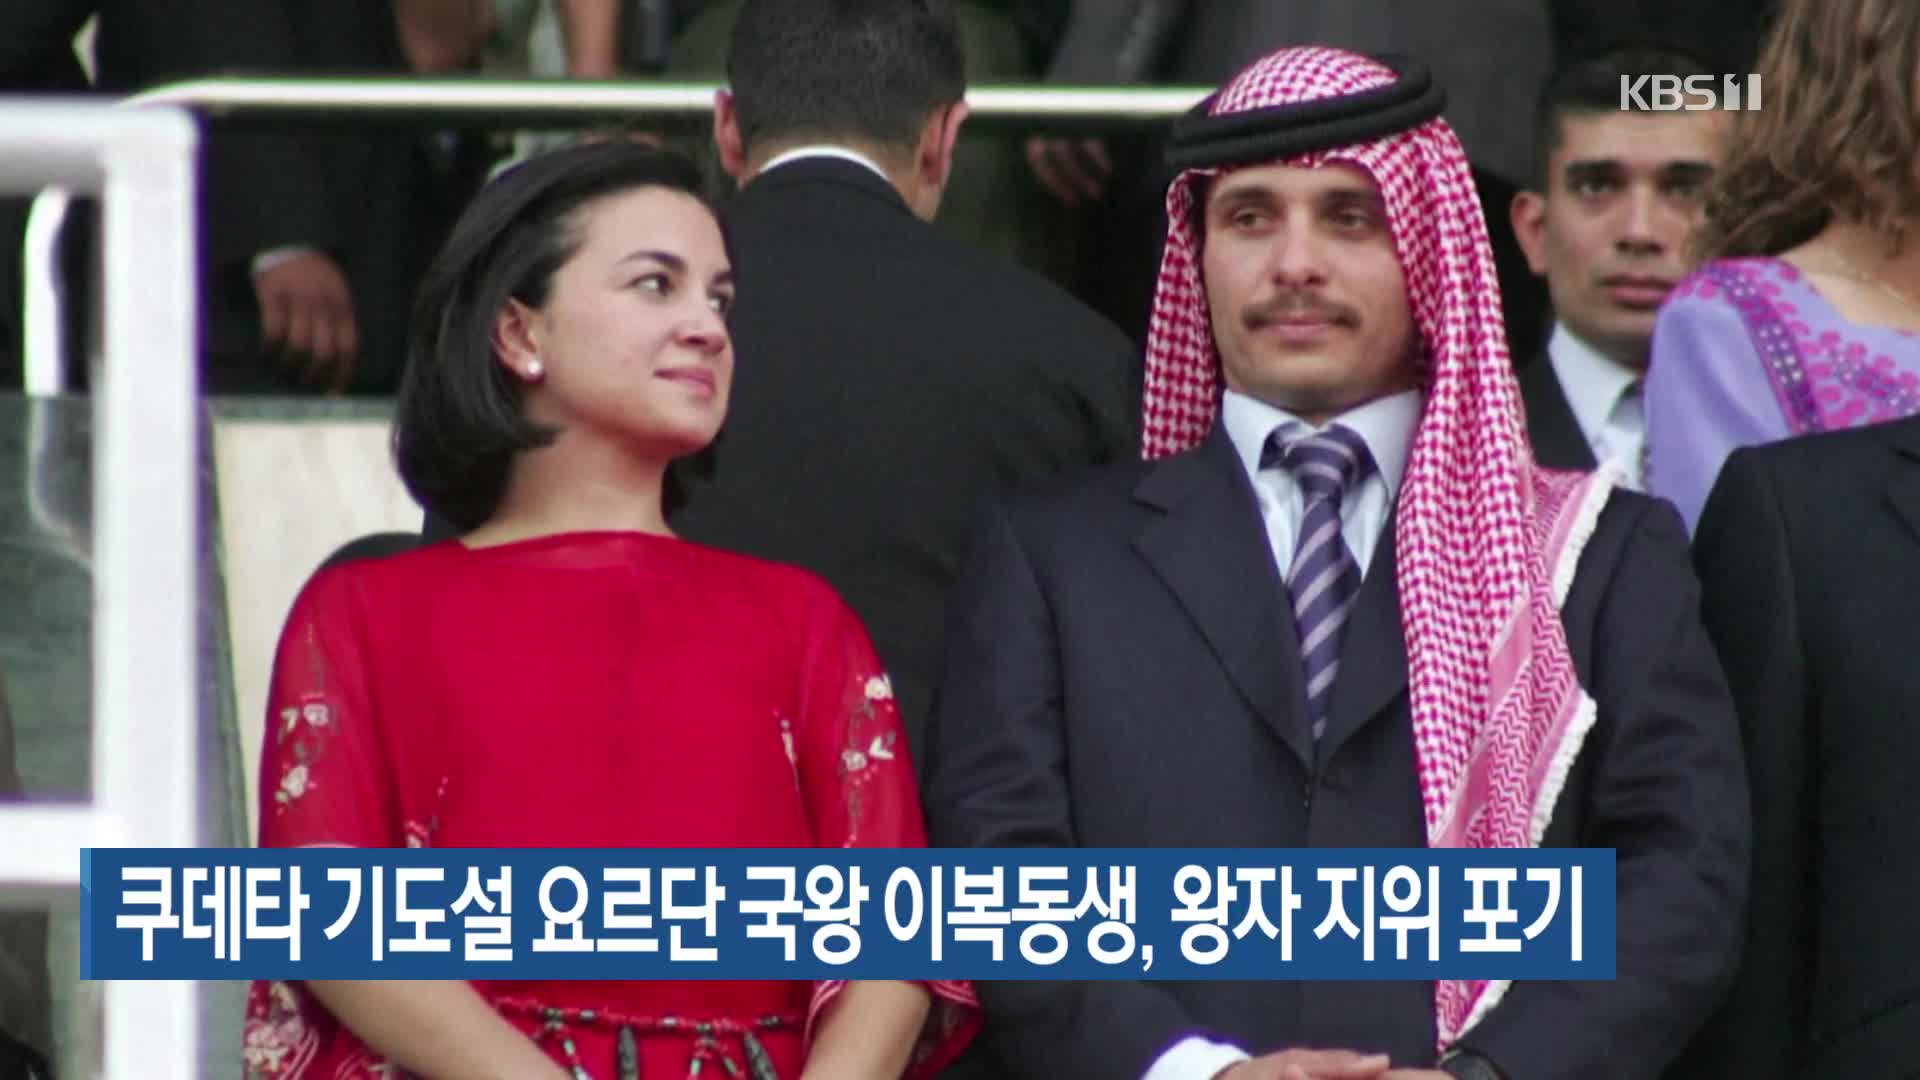 쿠데타 기도설 요르단 국왕 이복동생, 왕자 지위 포기